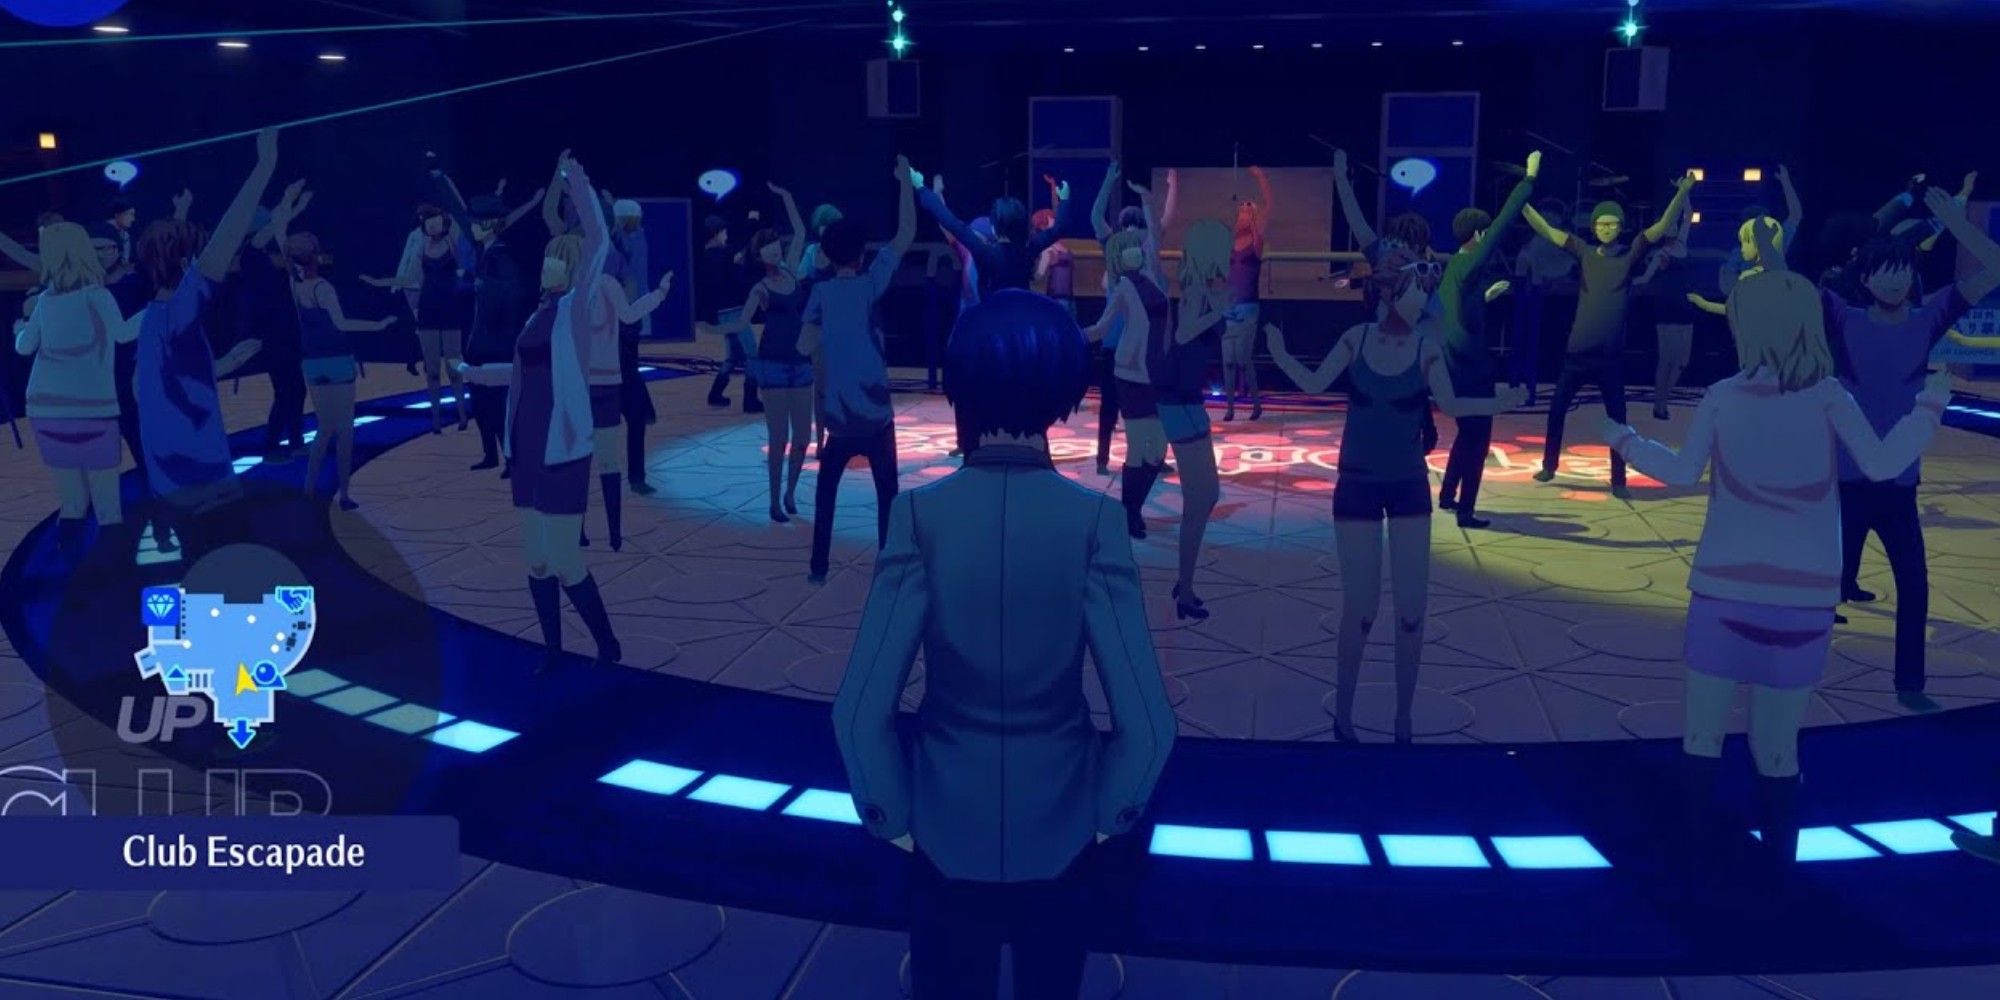 ماکوتو حامیان باشگاه را تماشا می کند "نه" در بازی Persona 3 Reload در جای خود برقصید